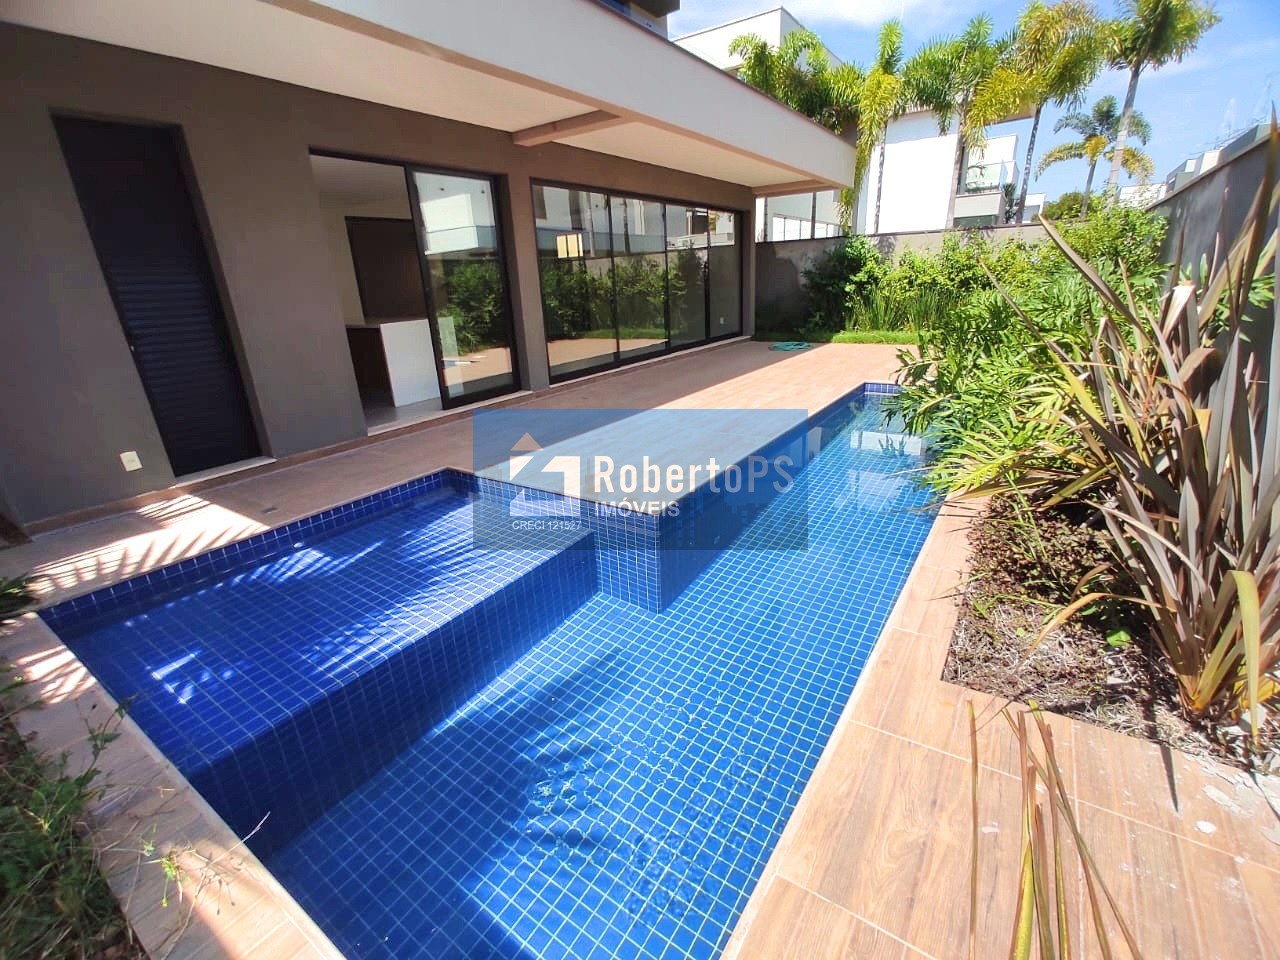 Sobrado no Golfe III,  alto padrão, 386 m2, 4 suítes, piscina, para venda R$3.950.000 - São José dos Campos-SP